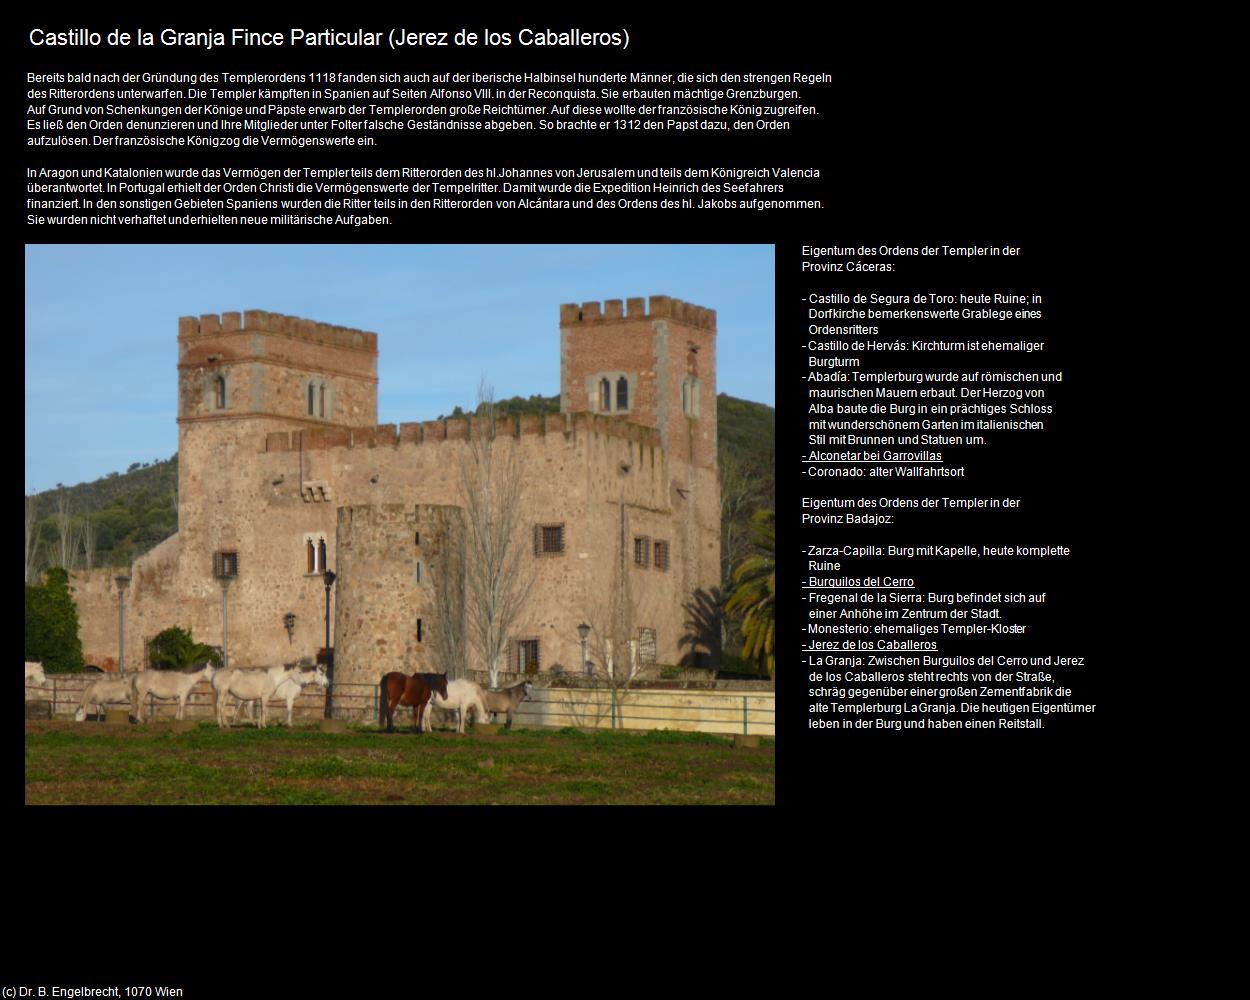 Castillo de la Granja Fince Particular (Jerez de los Caballeros) in EXTREMADURA(c)B.Engelbrecht